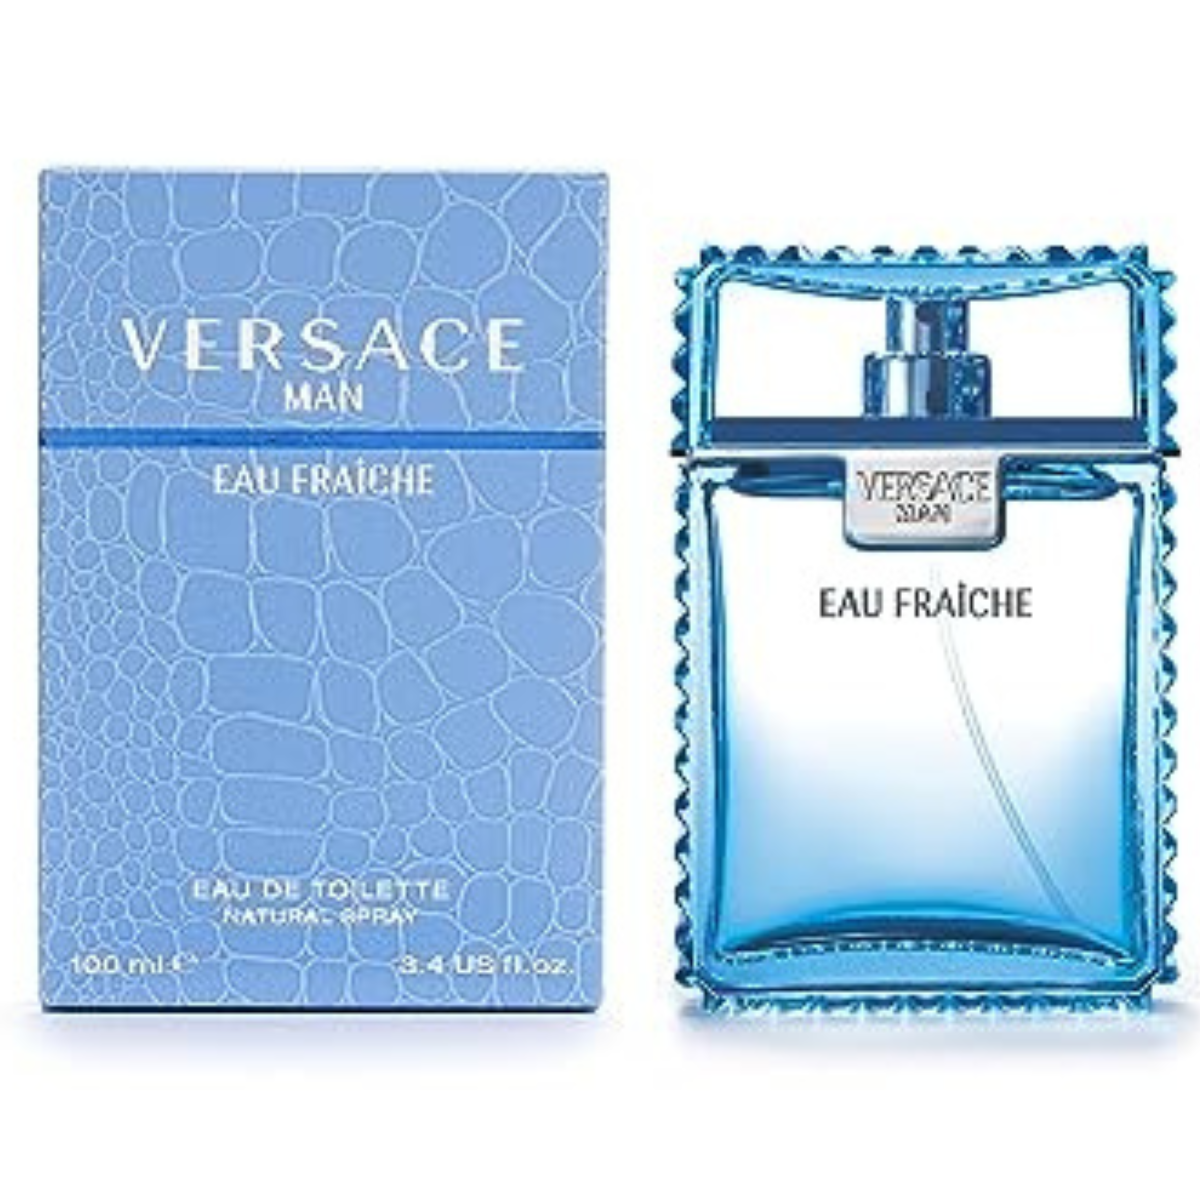 Versace Man Eau Fraiche 100 ml for Men